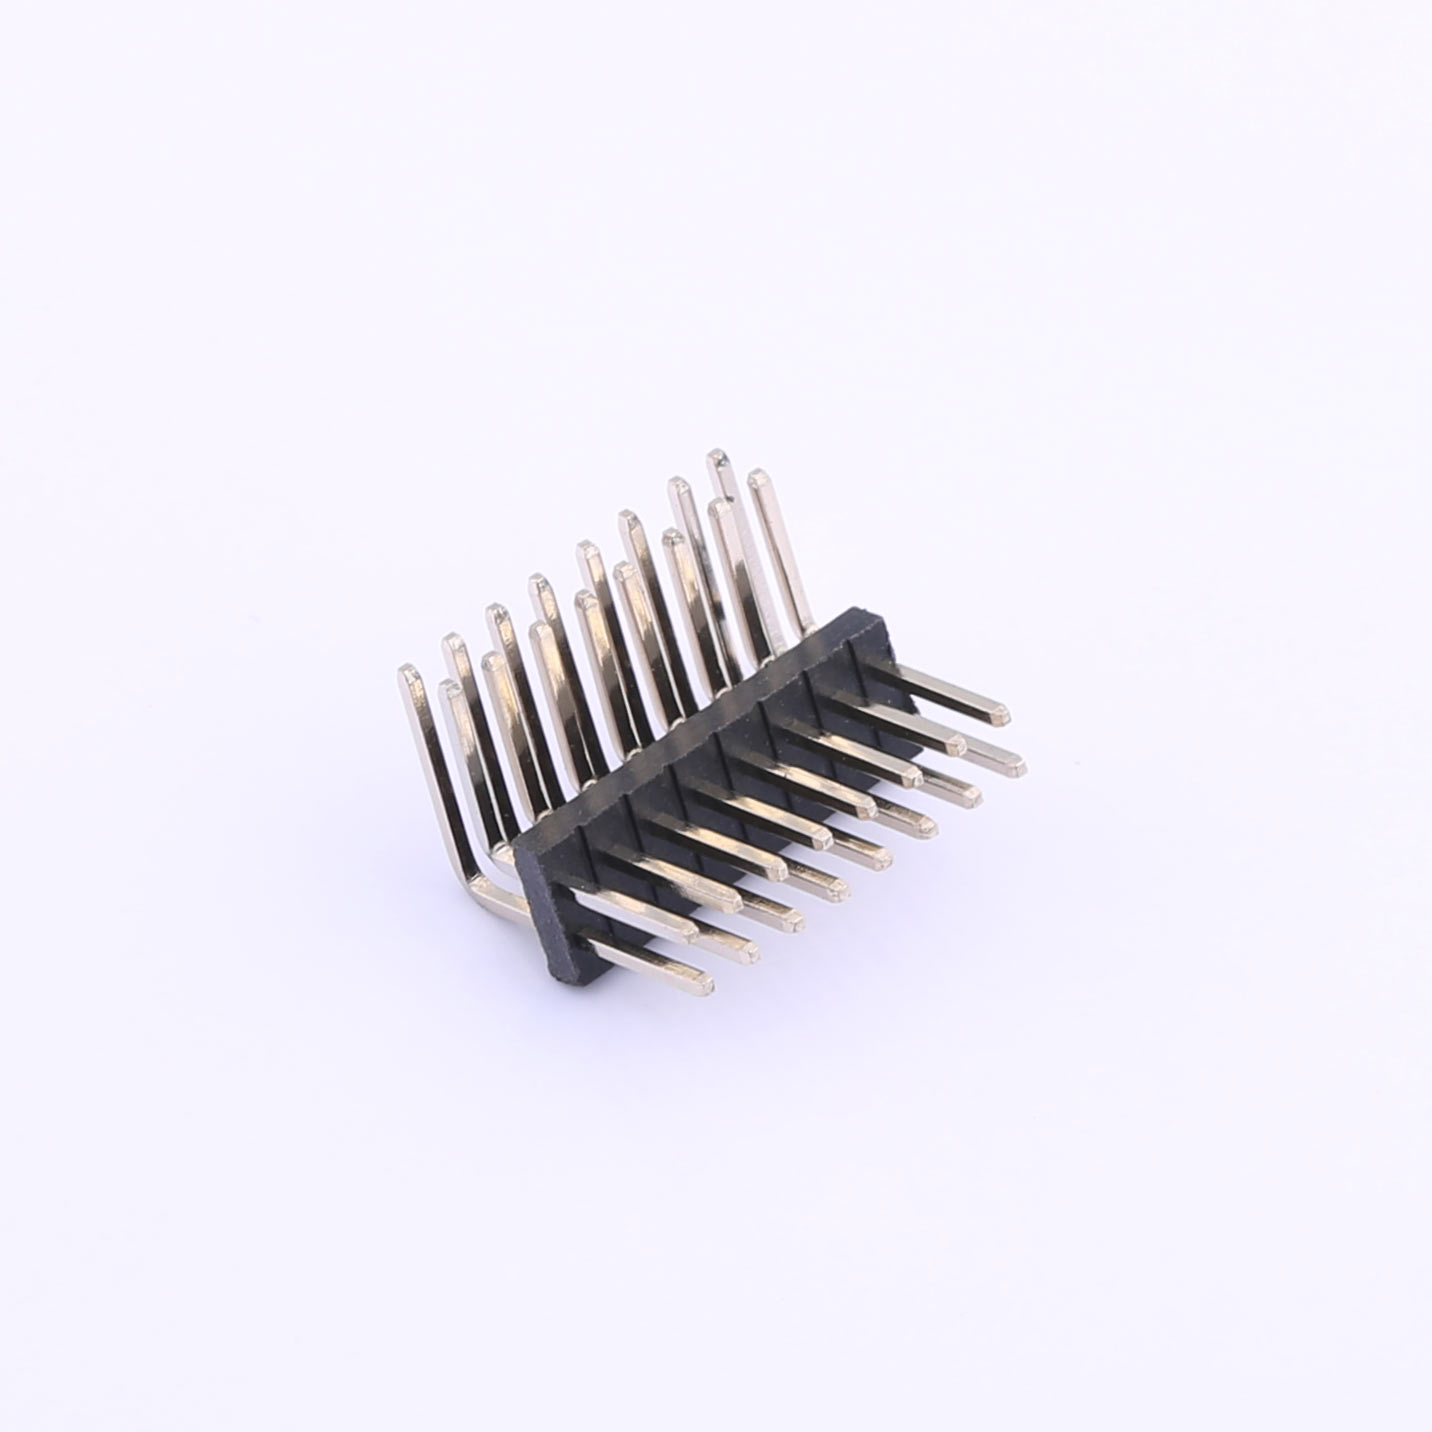 Kinghelm 1.27mm Pin Header Connector 2 Row*8 Pin 1A -  KH-1.27PH90-2X8P-L10.5